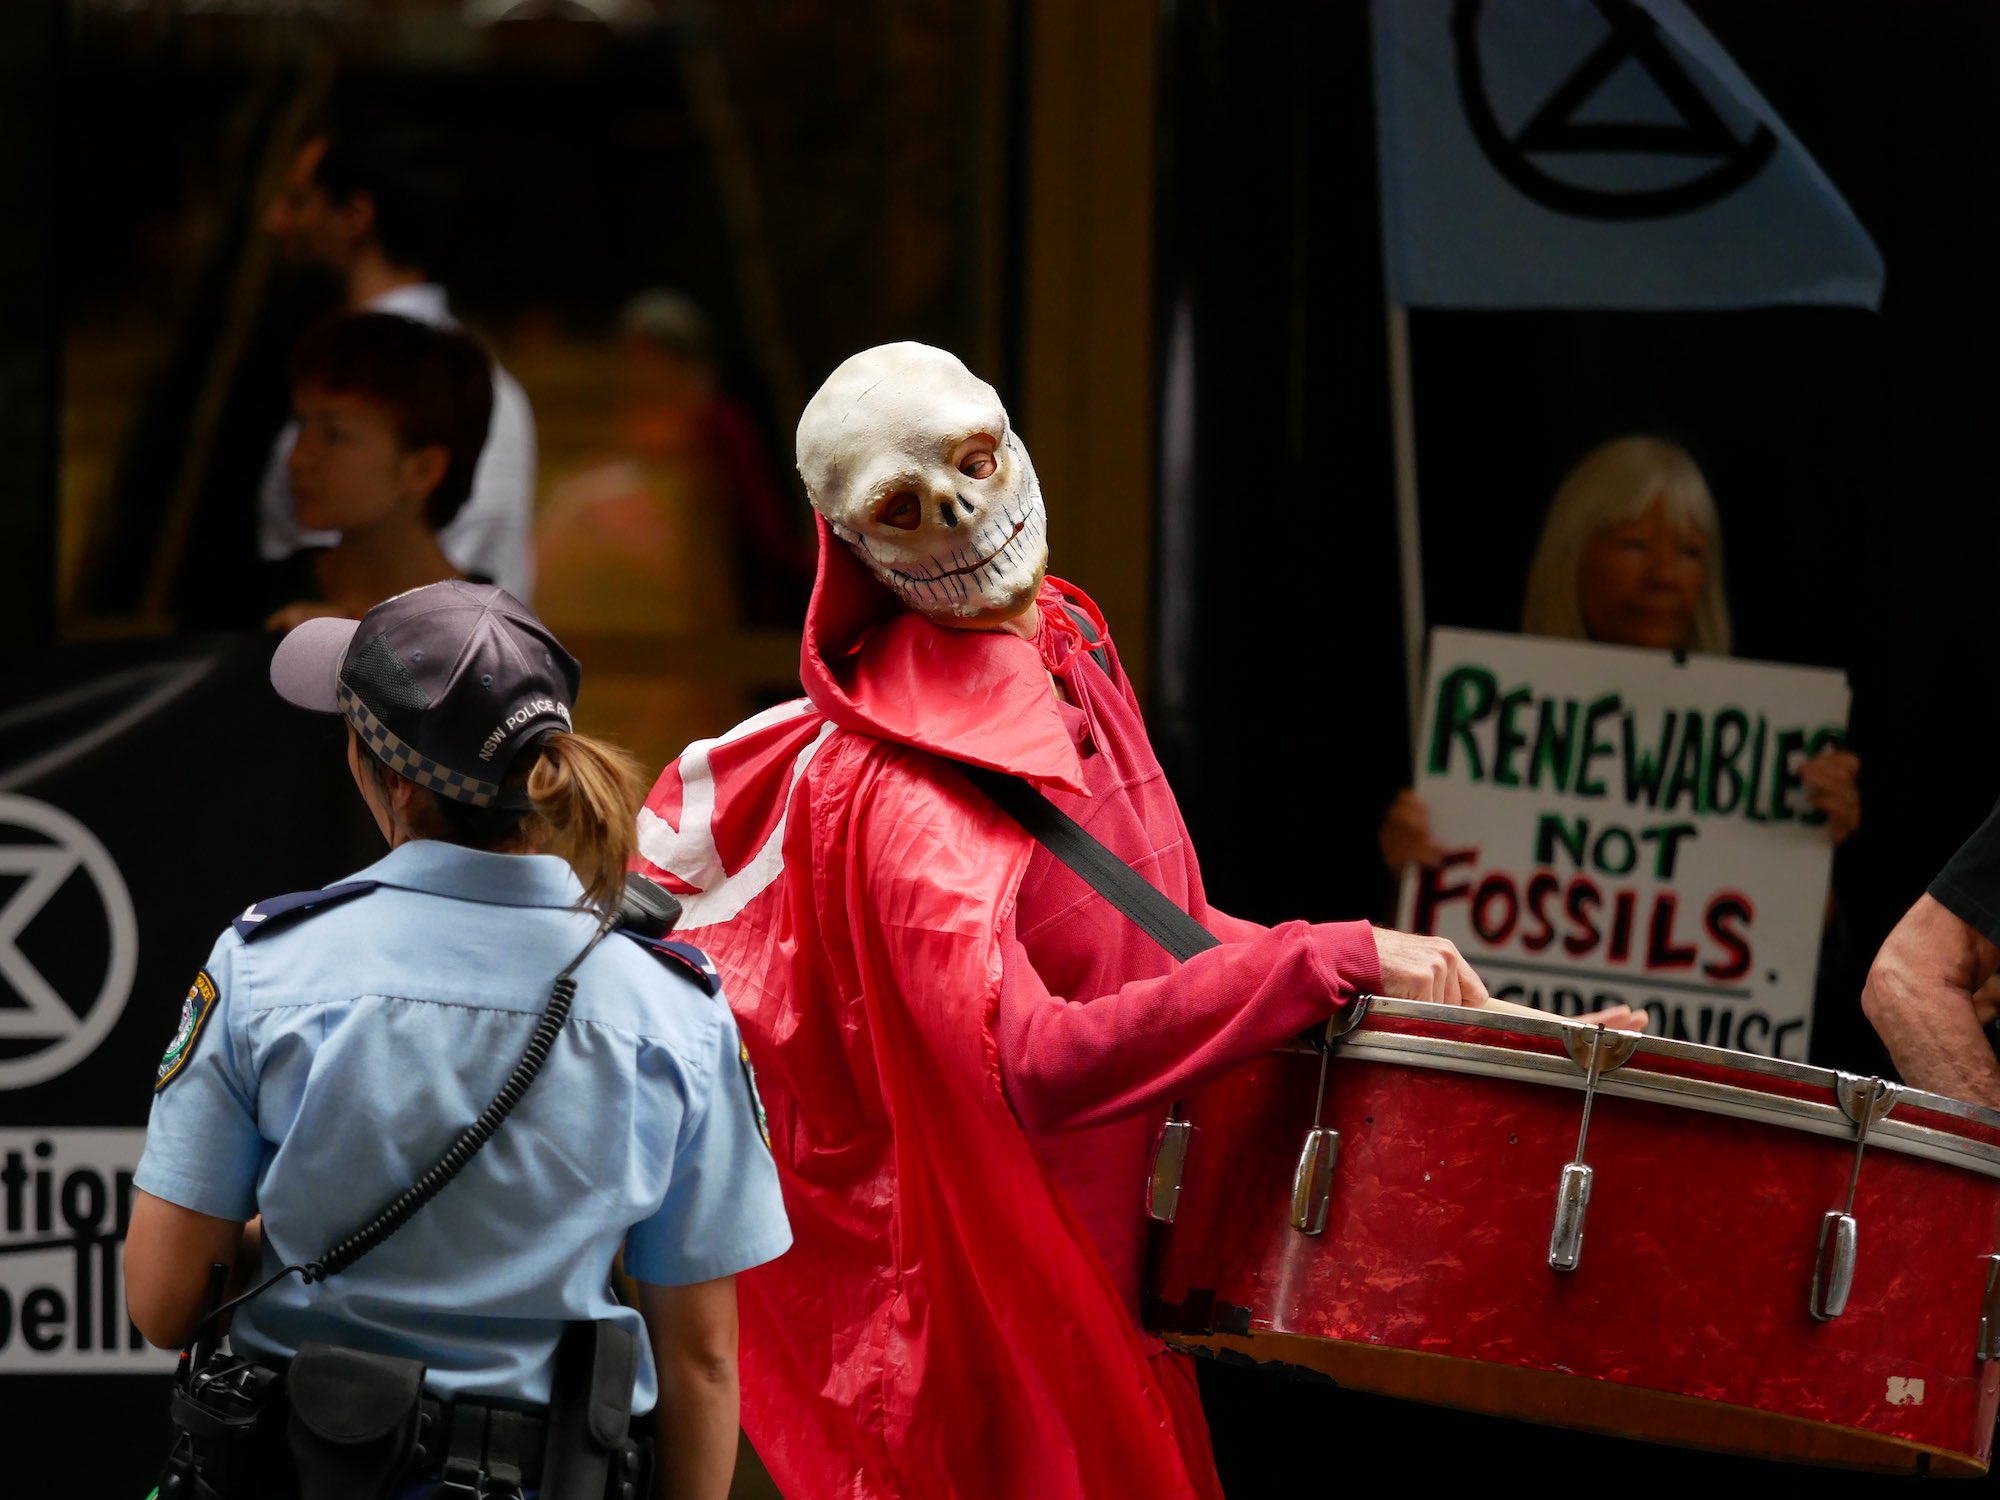 Sydney, Australia. Rebelia blokuje National Australia Bank pod hasłem „Niekradnijcie naszej przyszłości”.